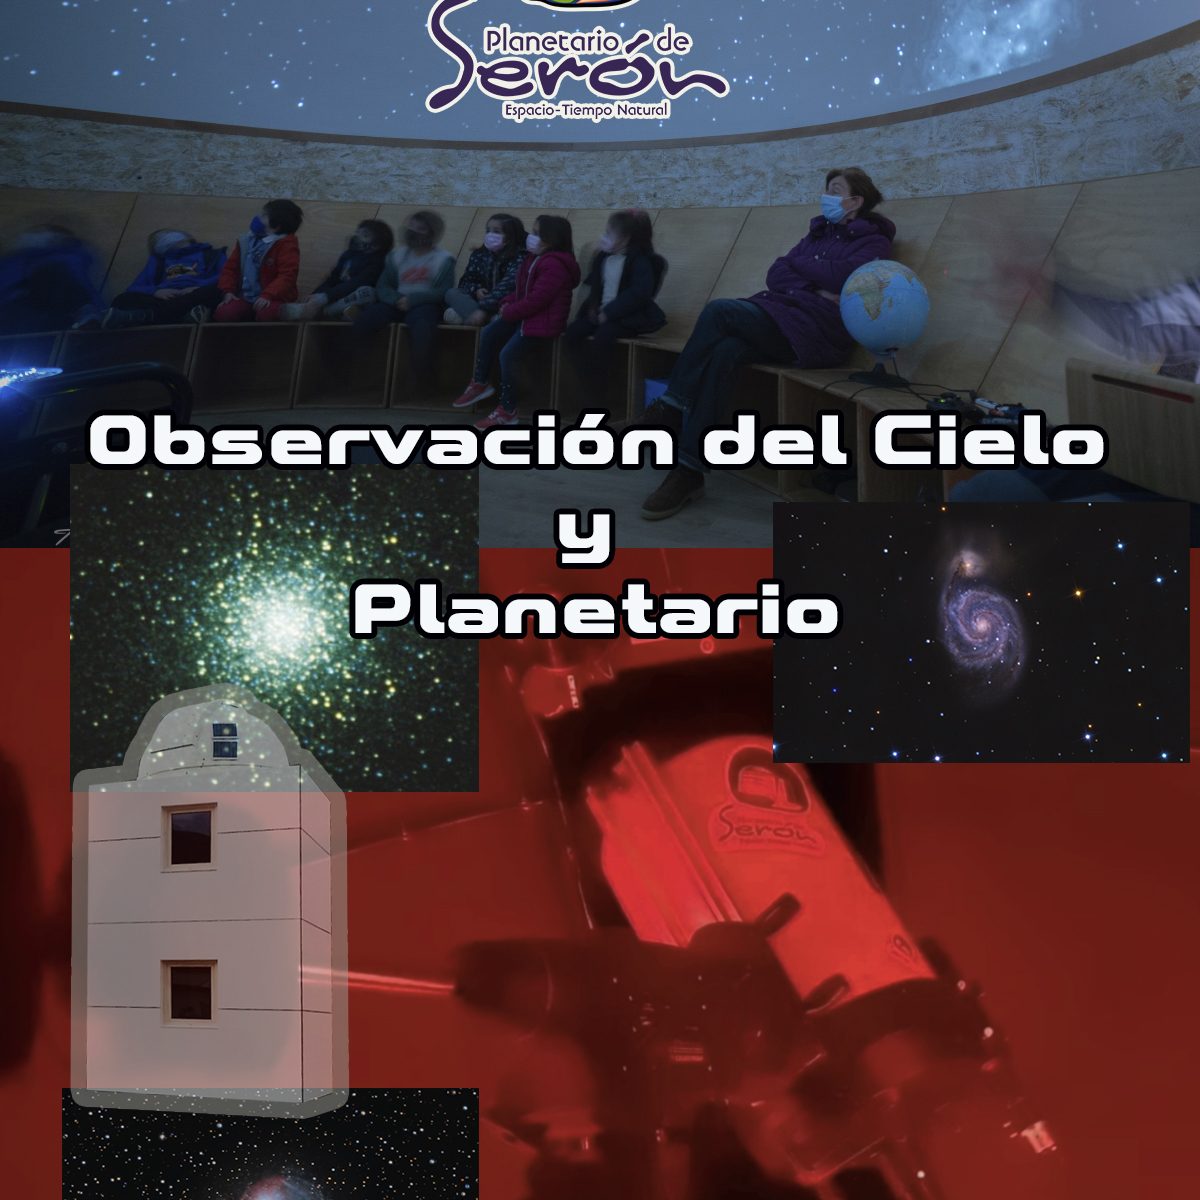 Planetario Y Observatorio de Seron